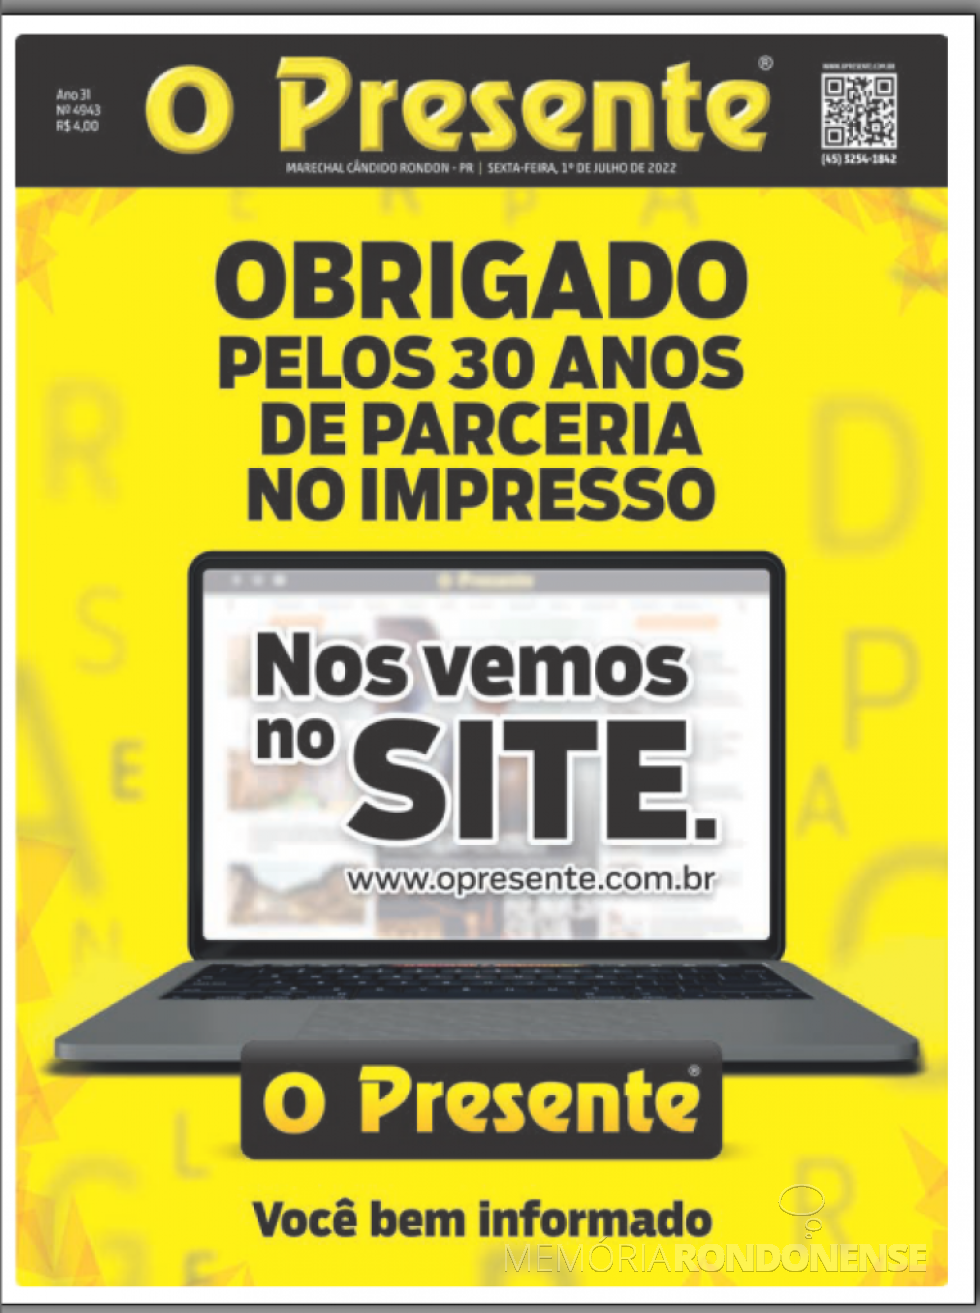 || Capa da última versão impressa do jornal O Presente, em 01 de julho de 2022.
Imagem: Acervo do informativo - FOTO 23 - 